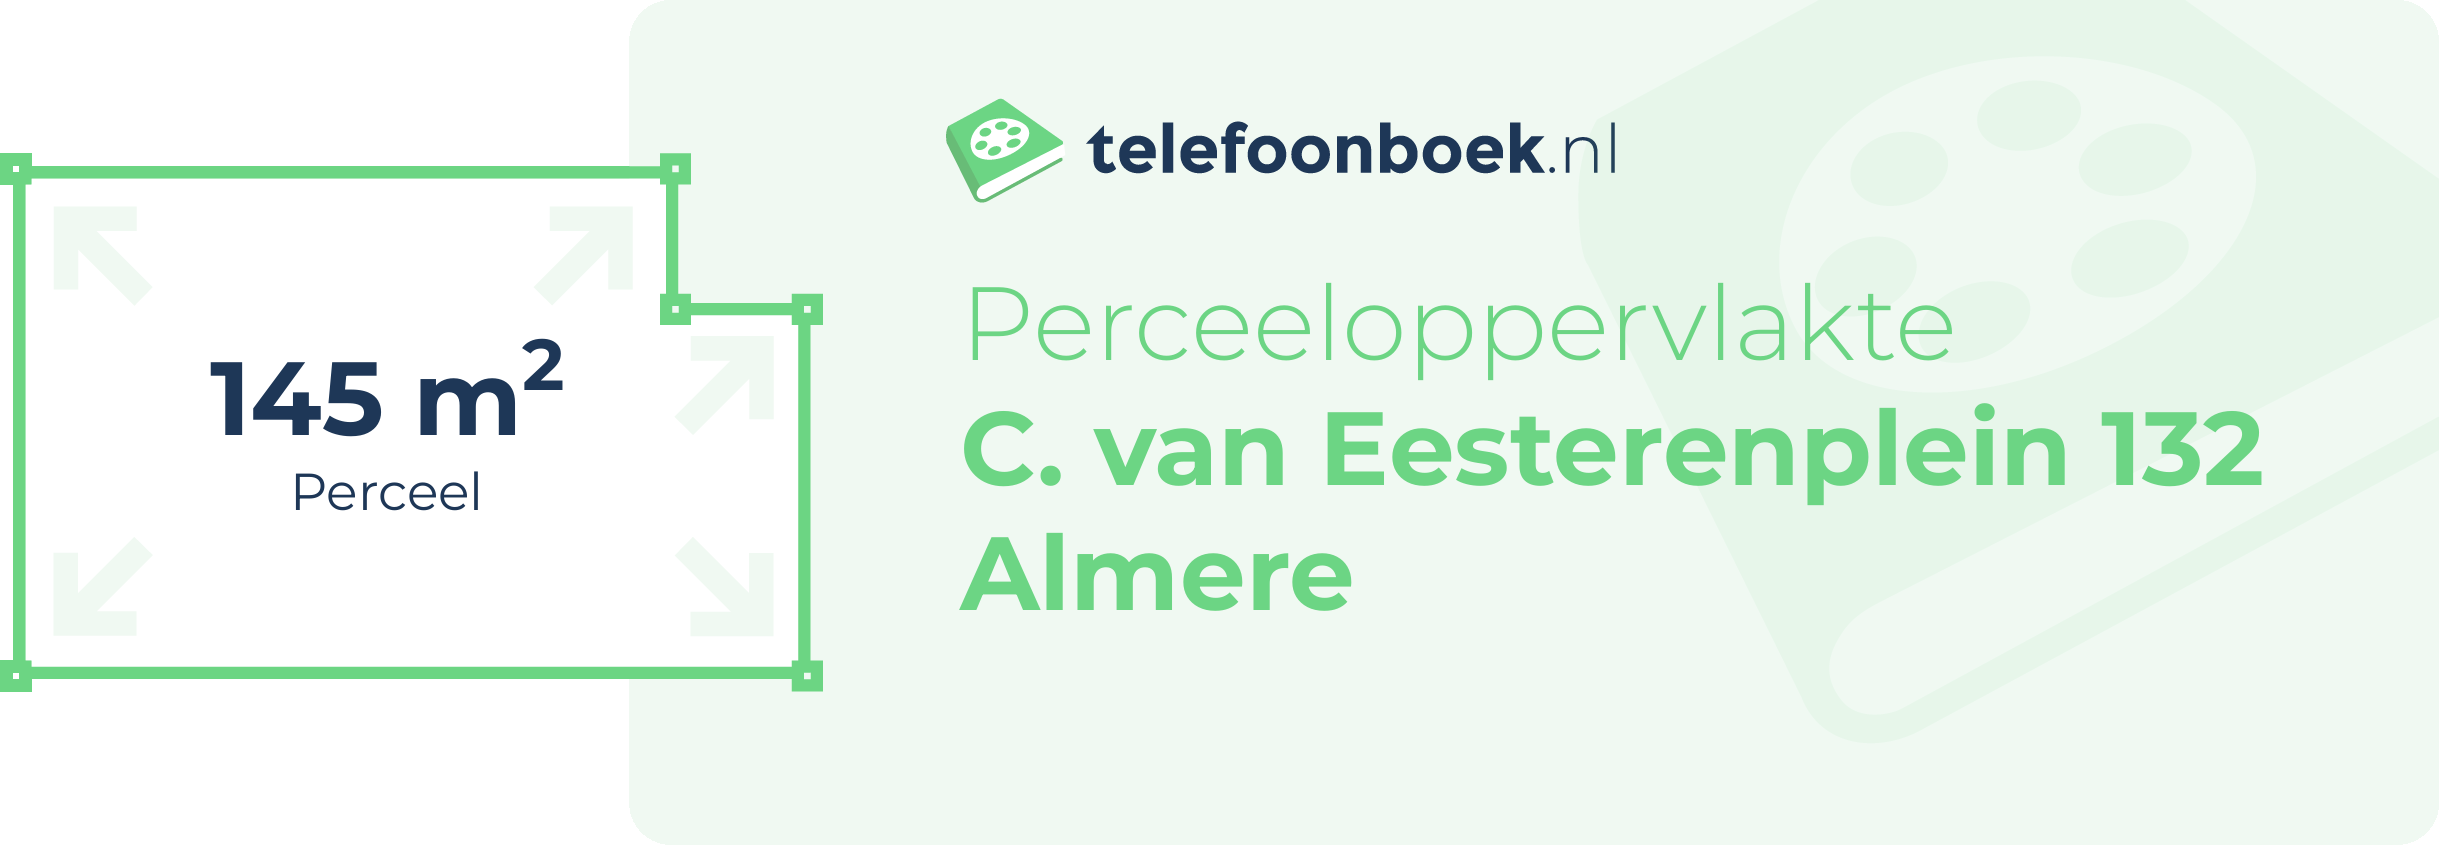 Perceeloppervlakte C. Van Eesterenplein 132 Almere